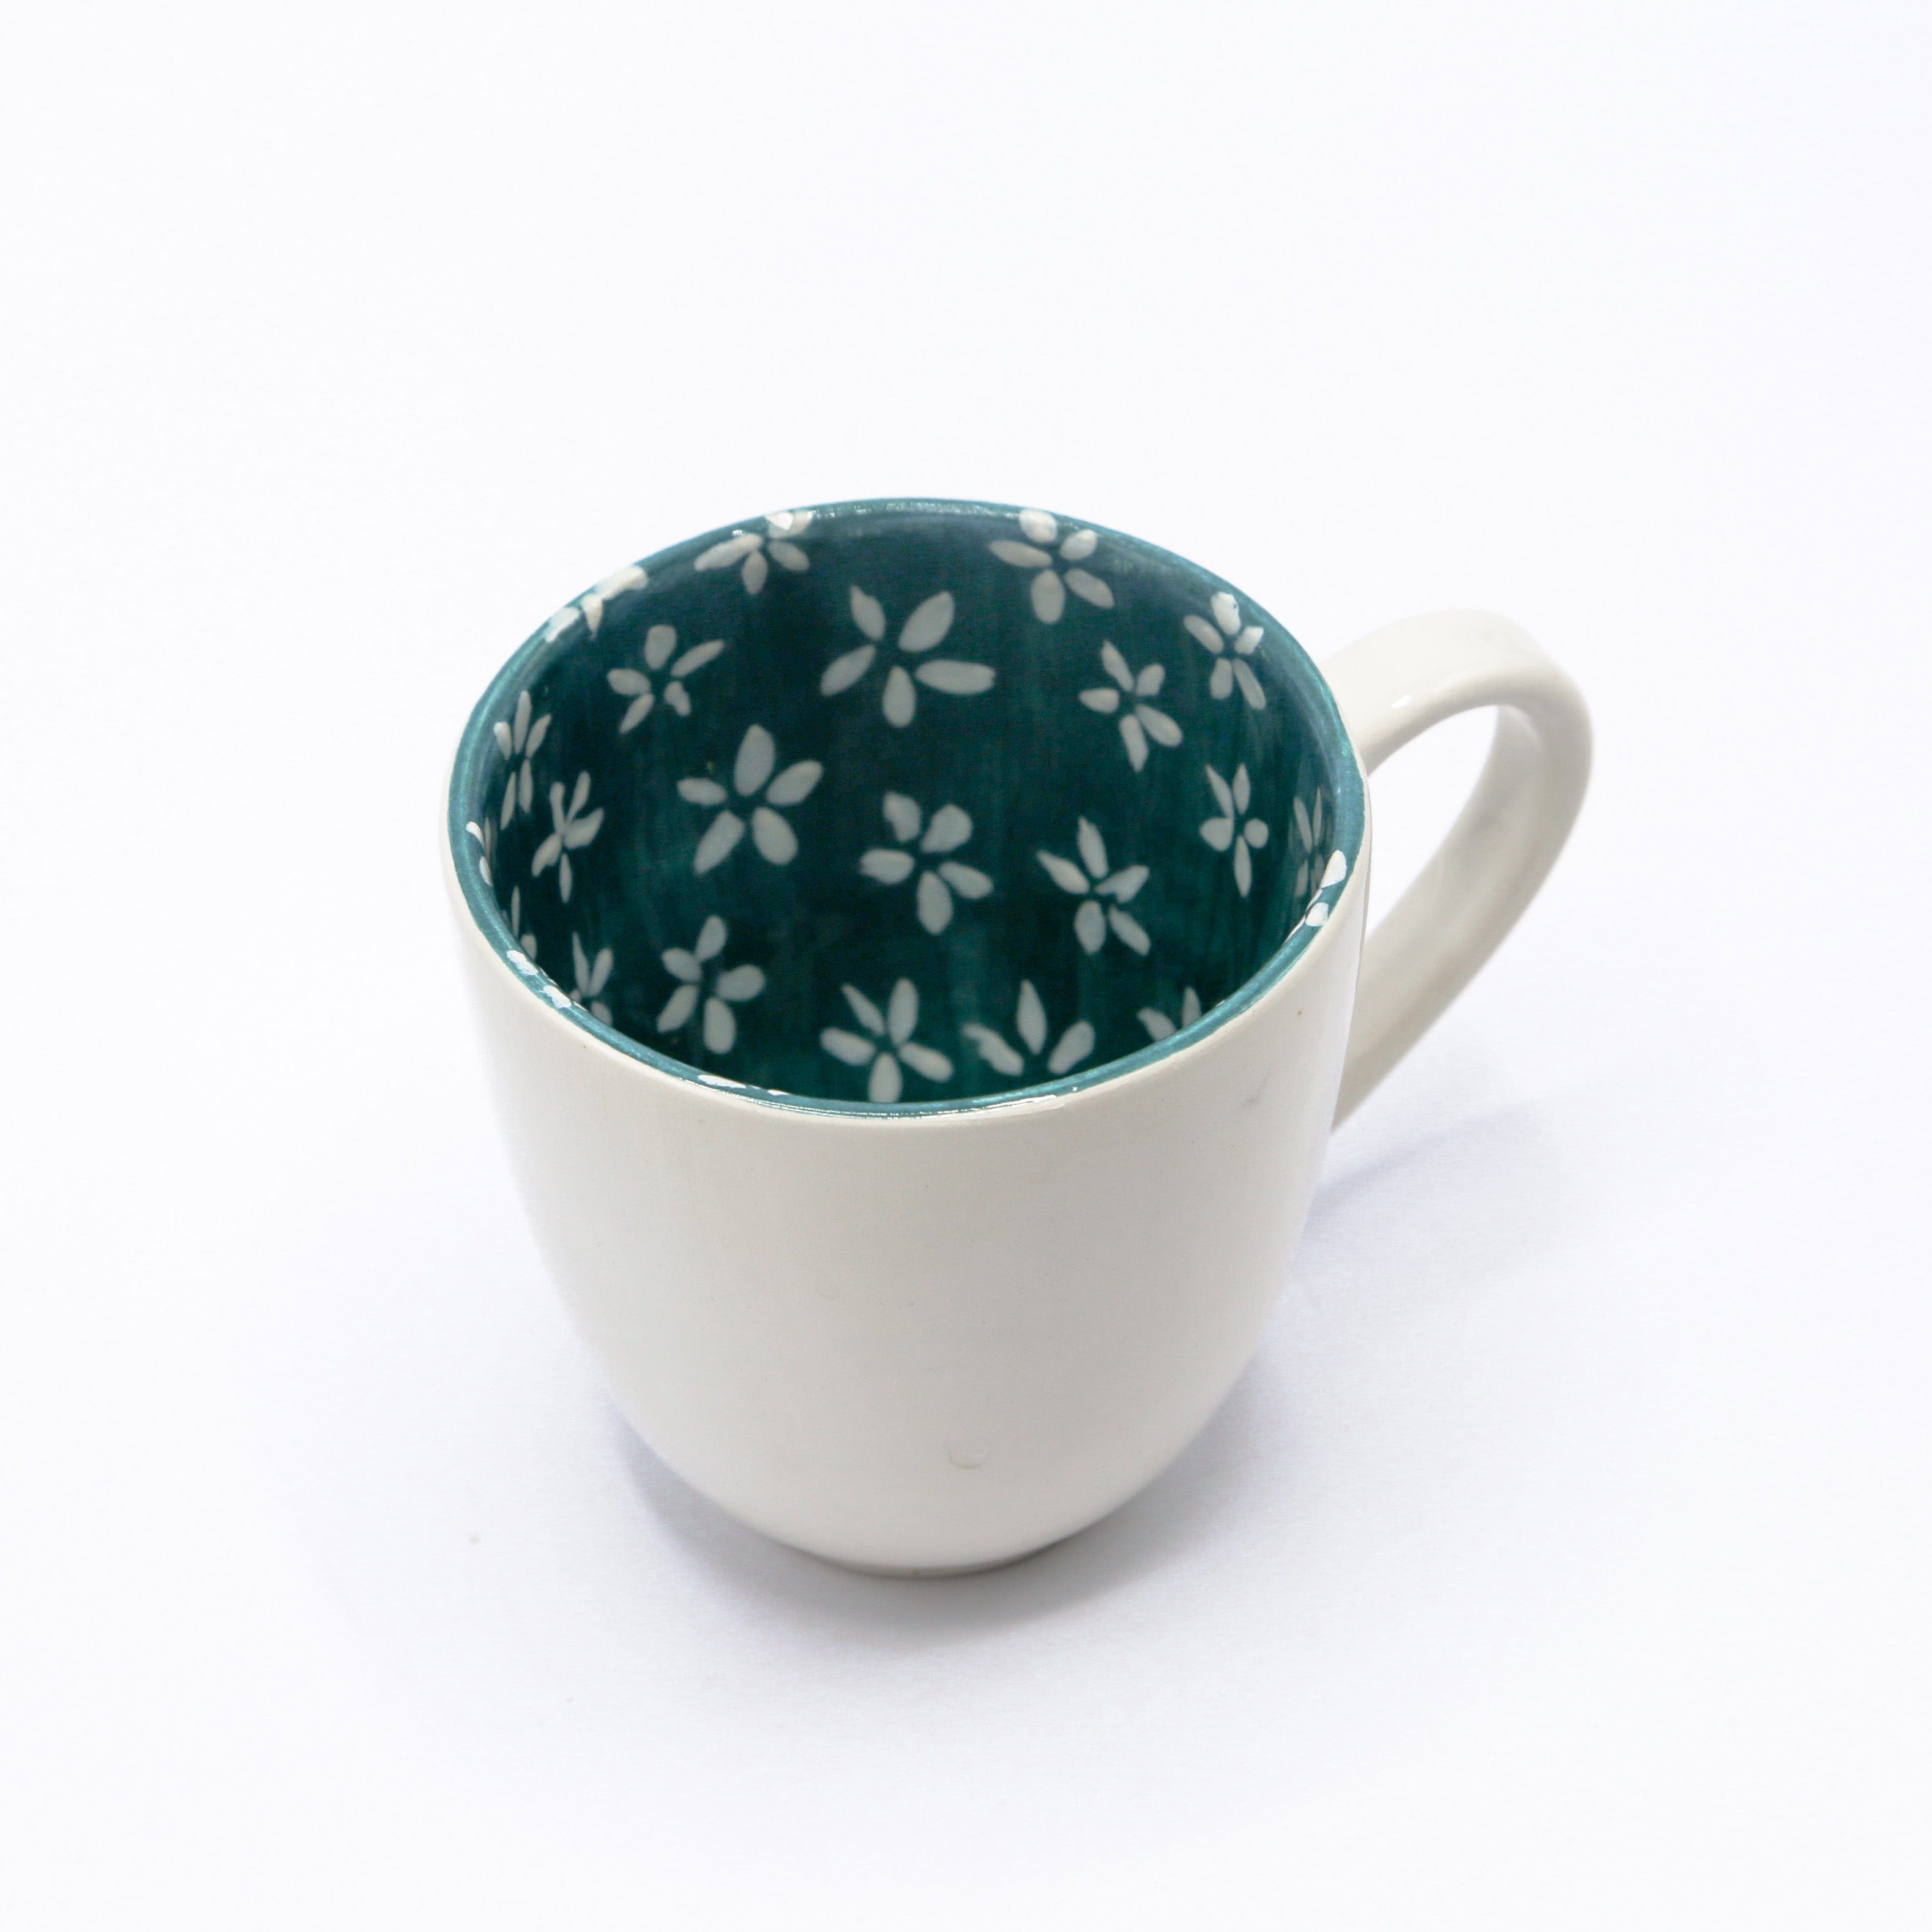 Shams El Balad Ceramic mug Turquoise Floral Ceramic Mug